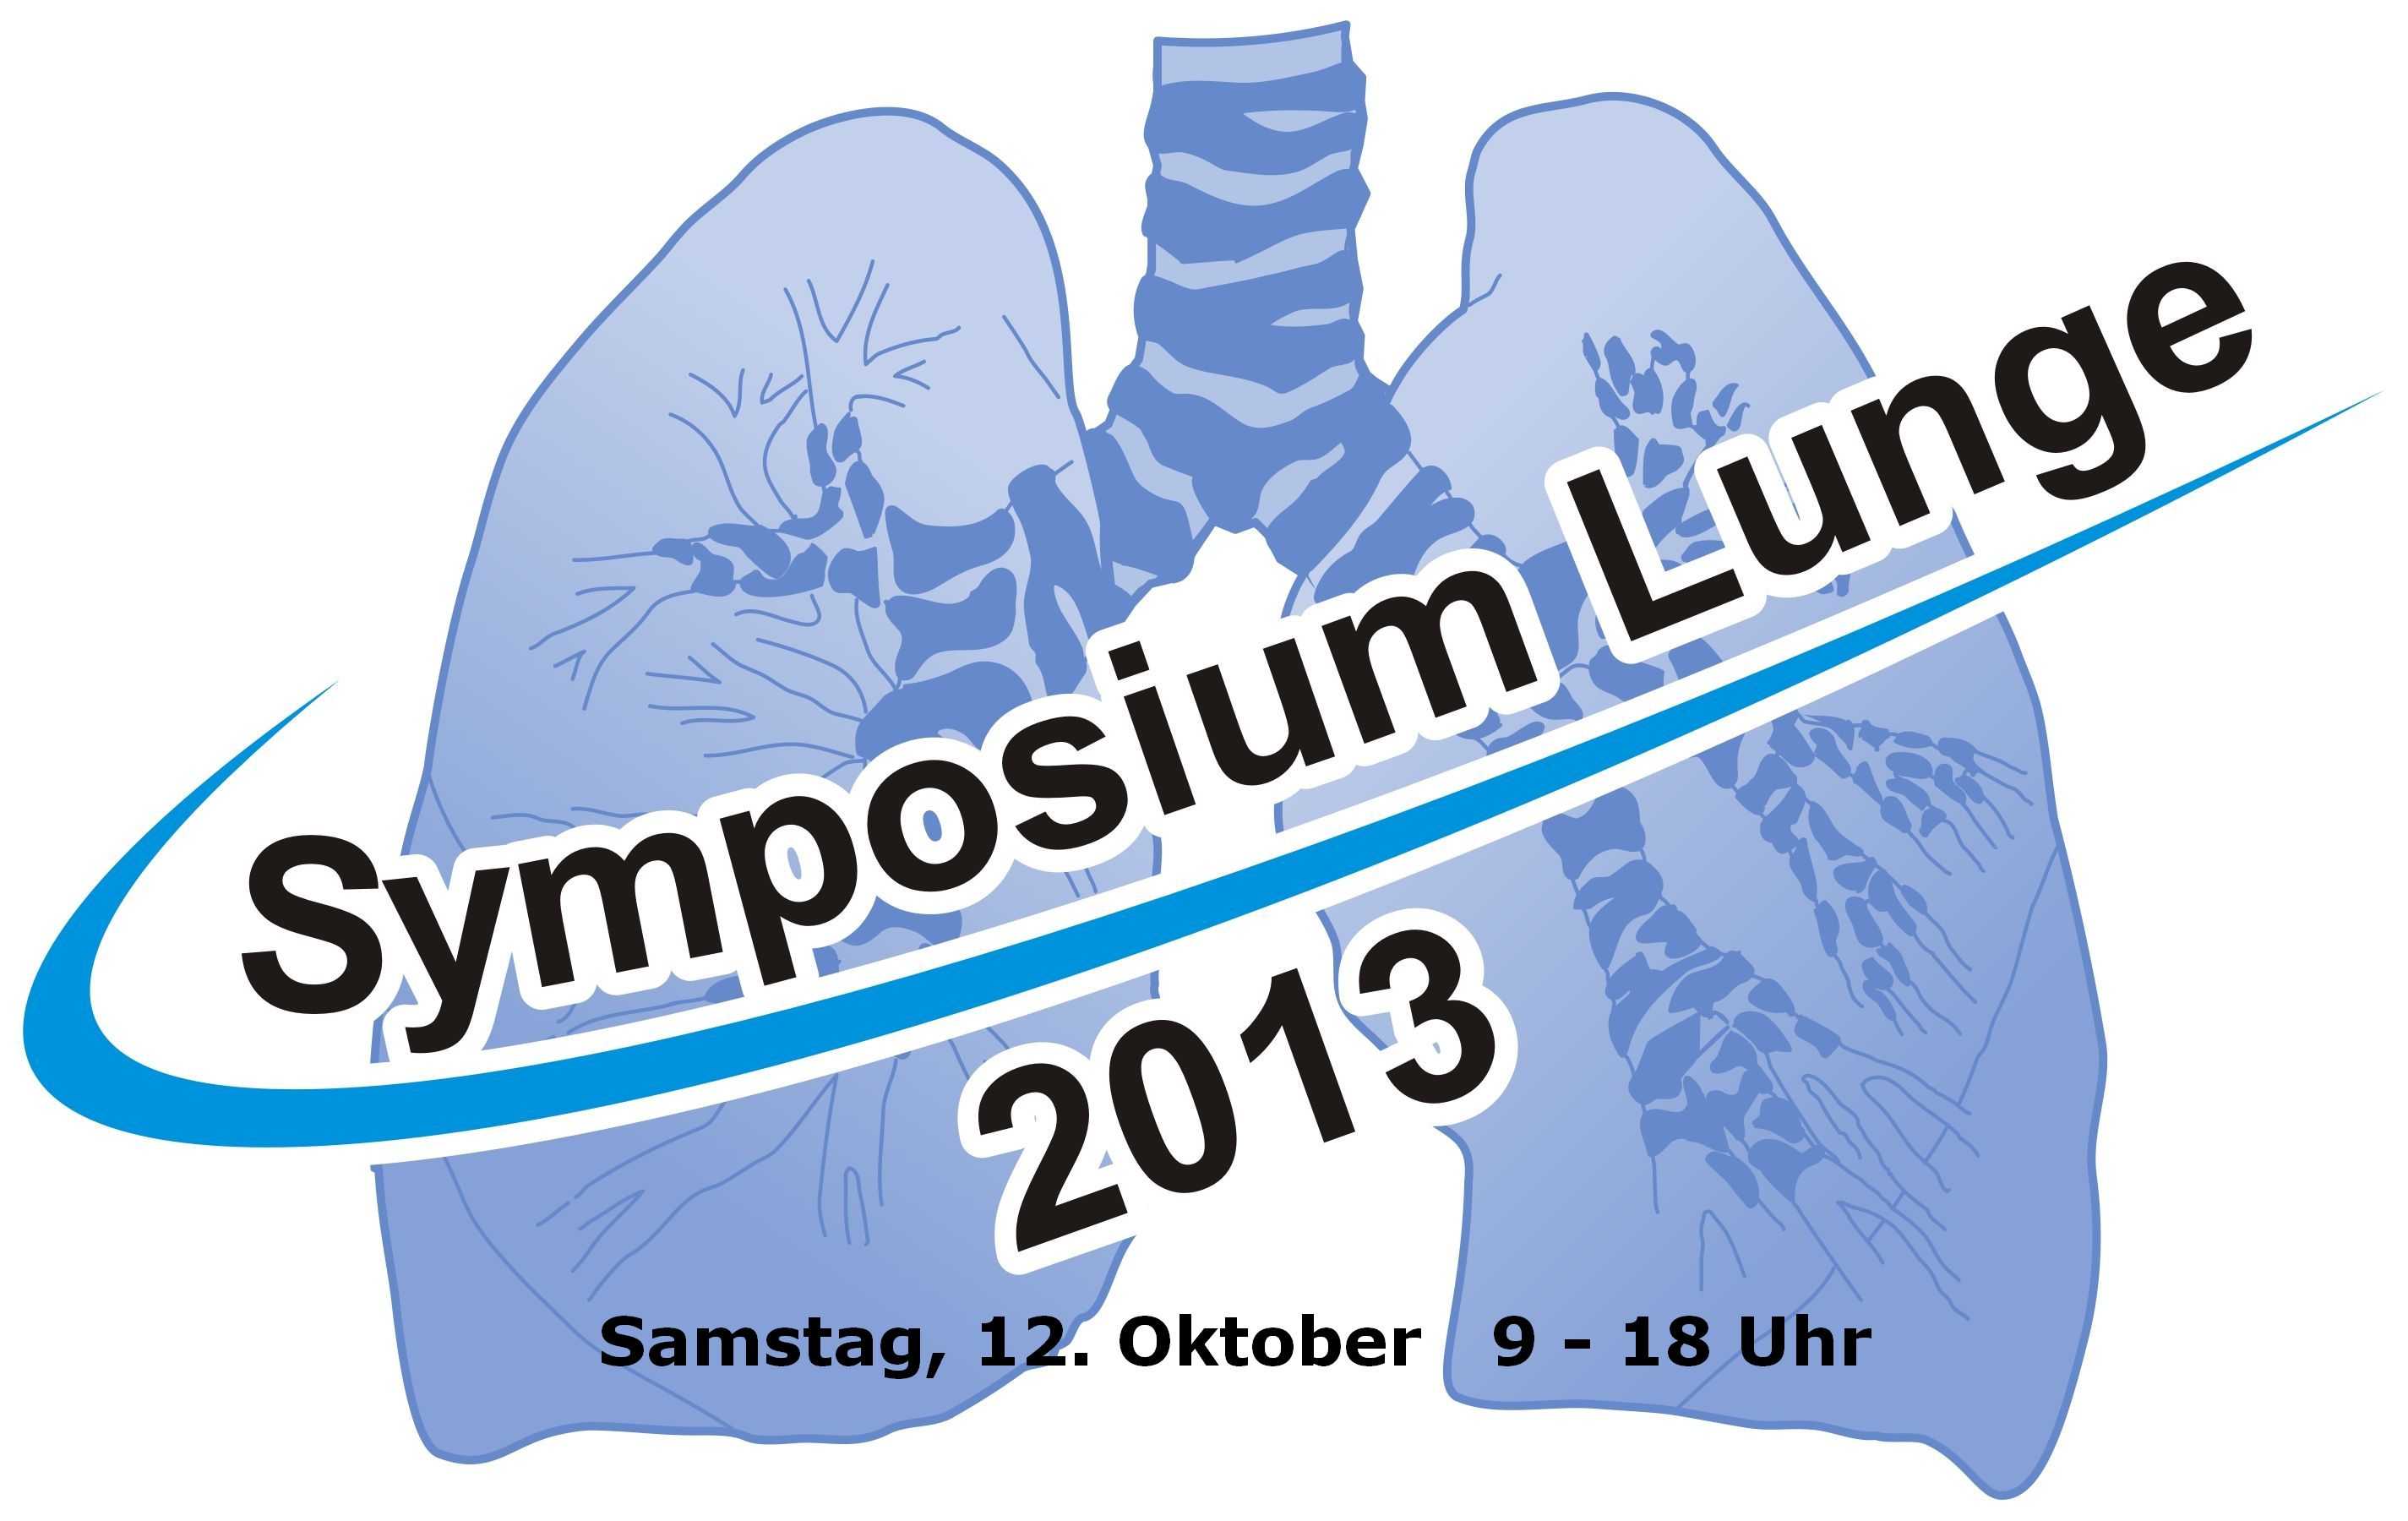 Bayern-24/7.de - Bayern Infos & Bayern Tipps | 6. Symposium Lunge am Samstag, den 12. Oktober 2013 in Hattingen